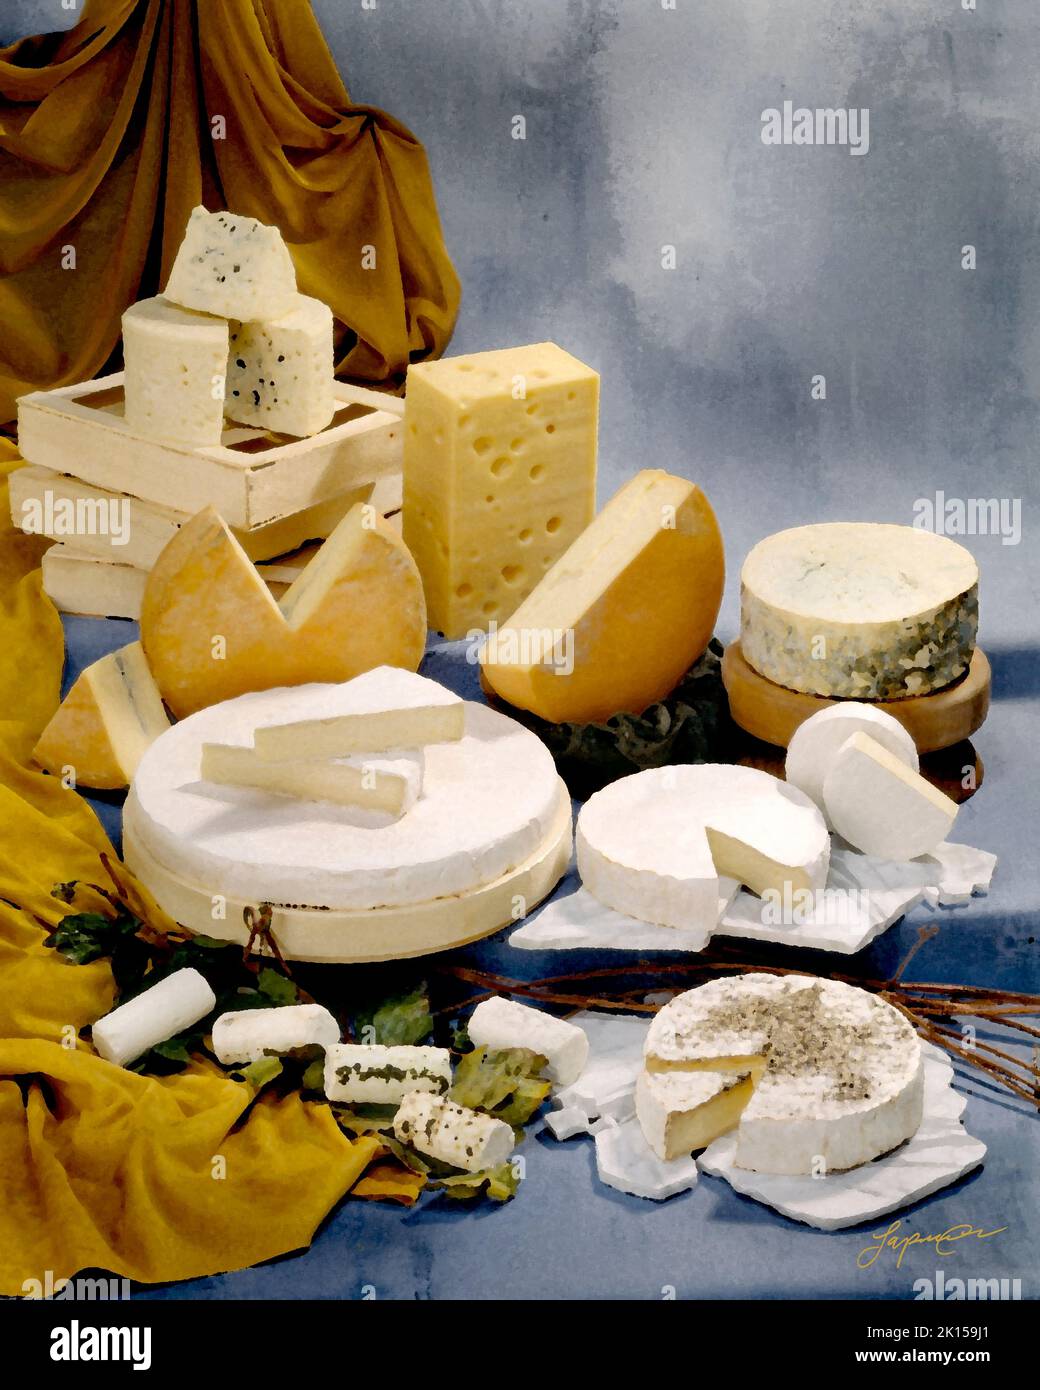 Eine Gruppe französischer Käsesorten in einem Farbfoto auf einem kühlen, grau-blauen, fleckigen Hintergrund. foto auf dem studiotisch. Mit dem Filter für Malstile in Photoshop. Stockfoto